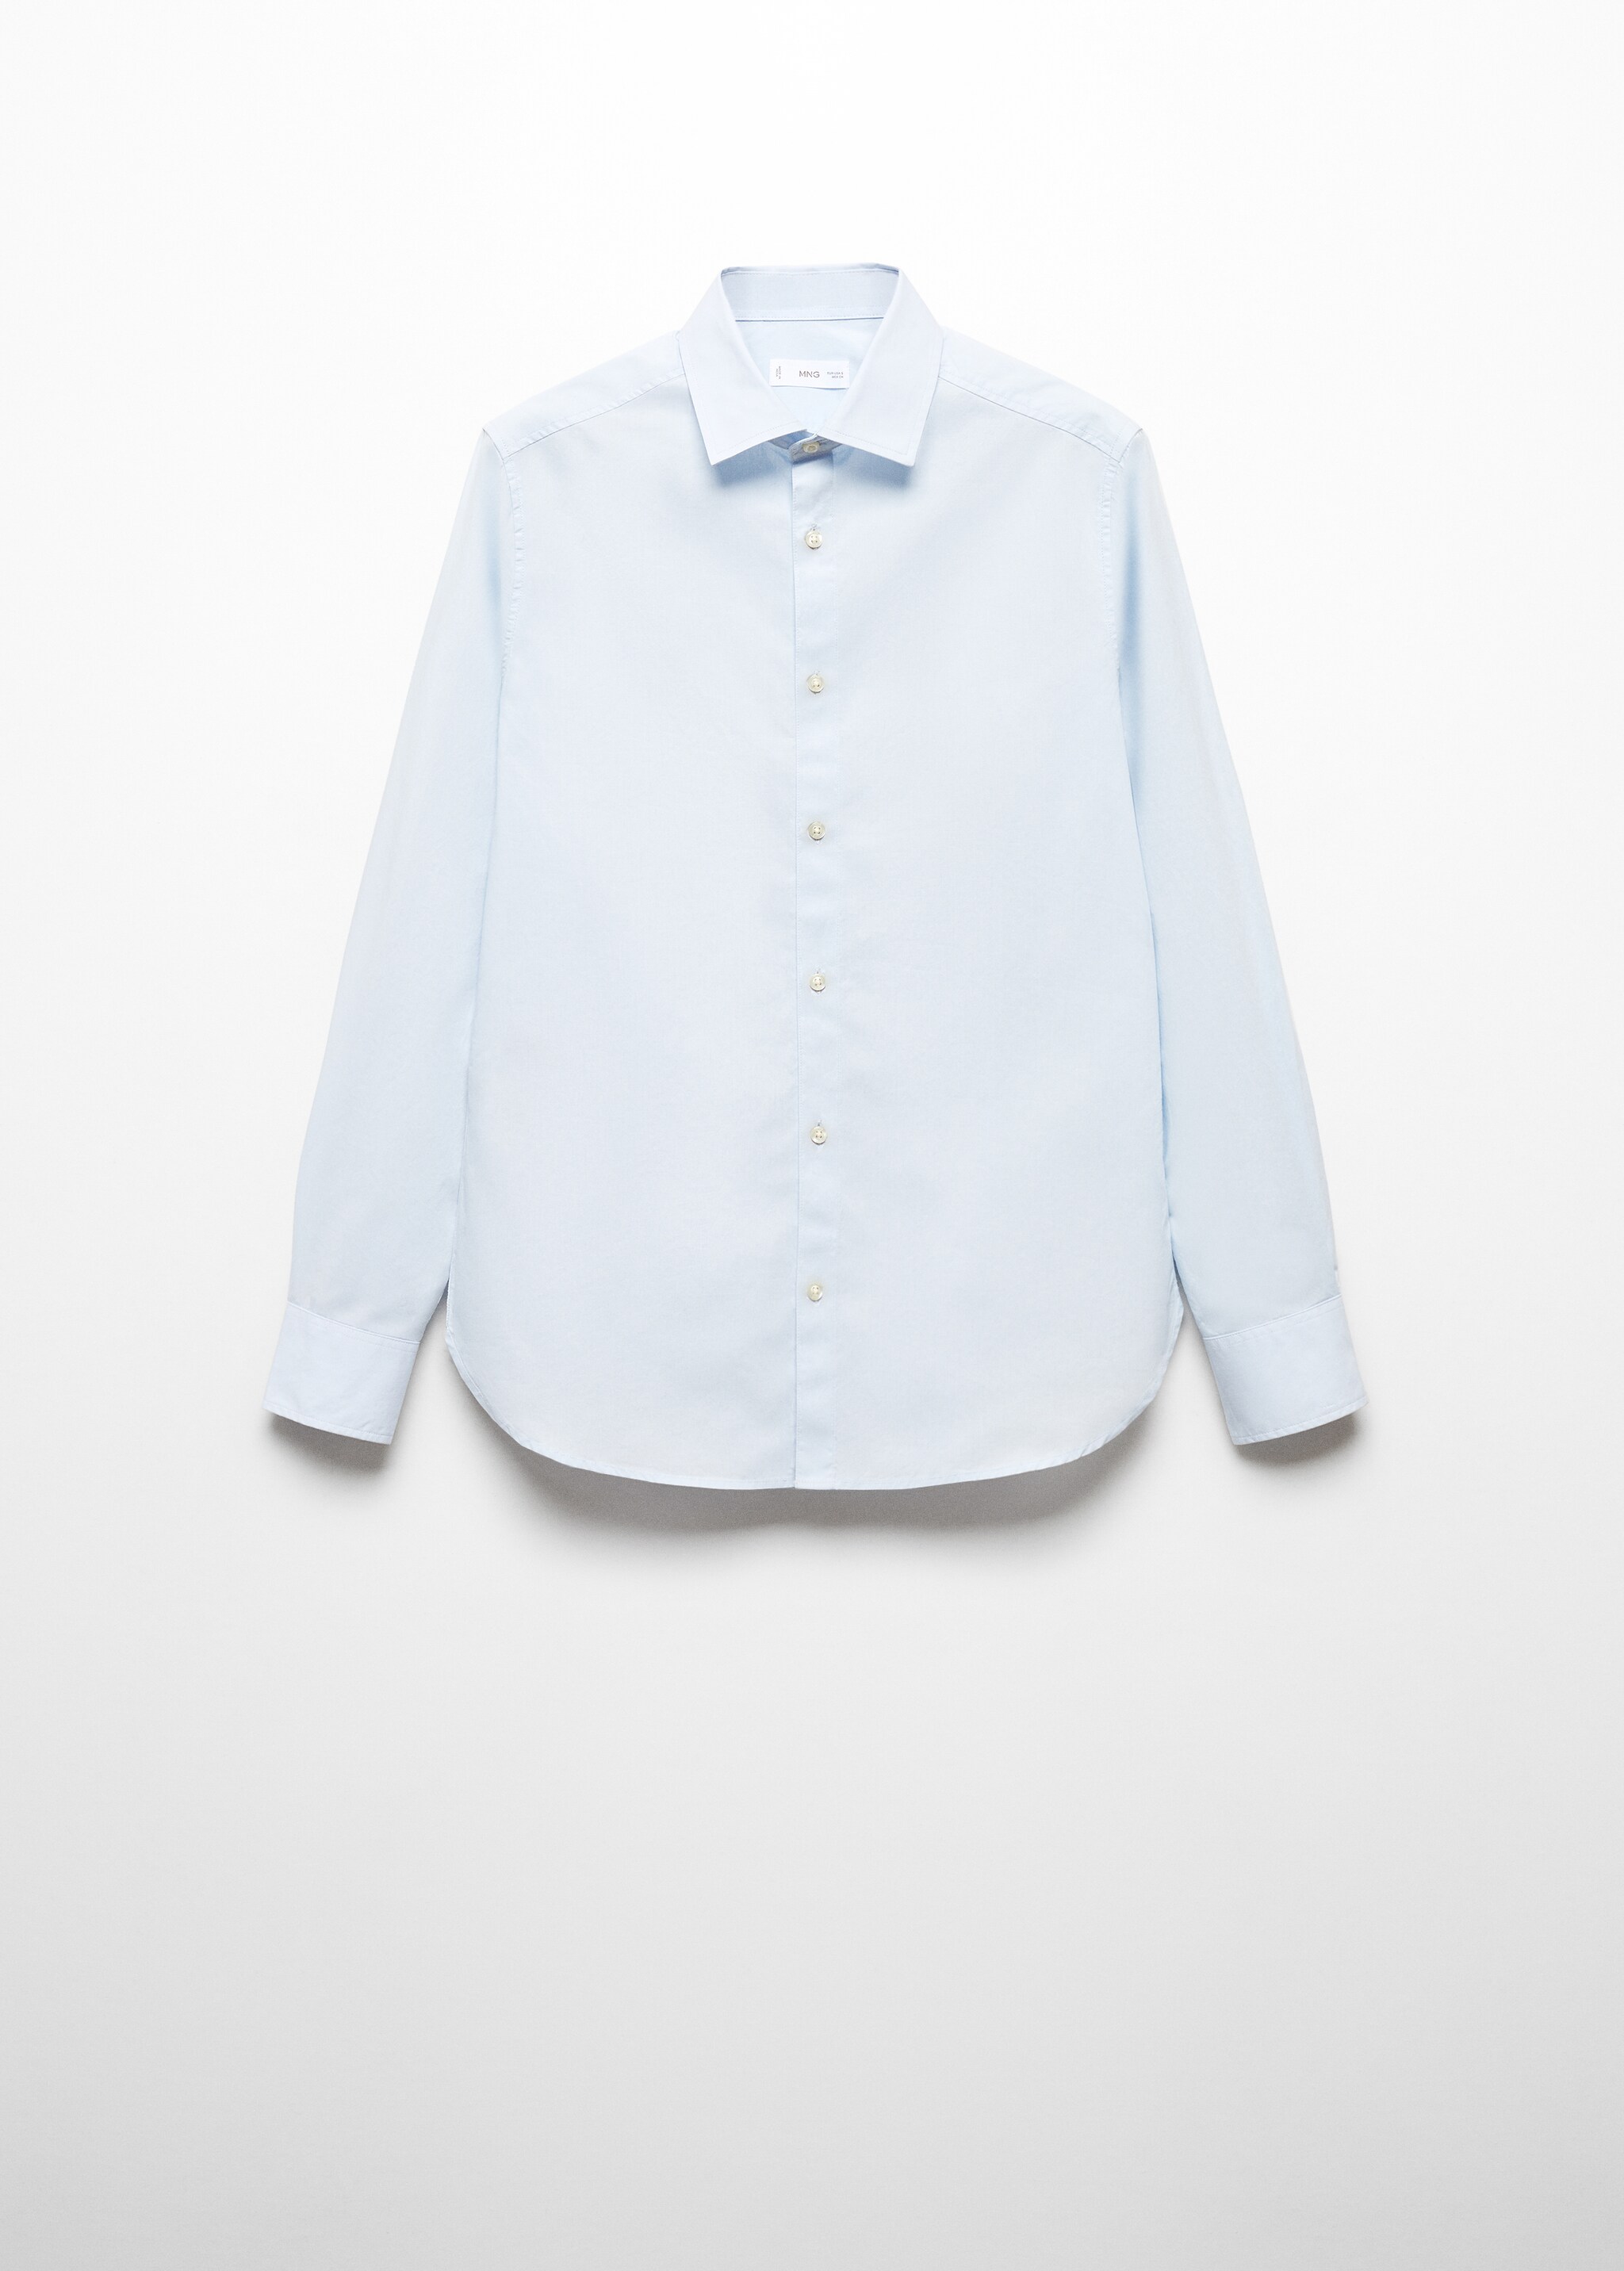 Camisa Oxford algodón - Artículo sin modelo